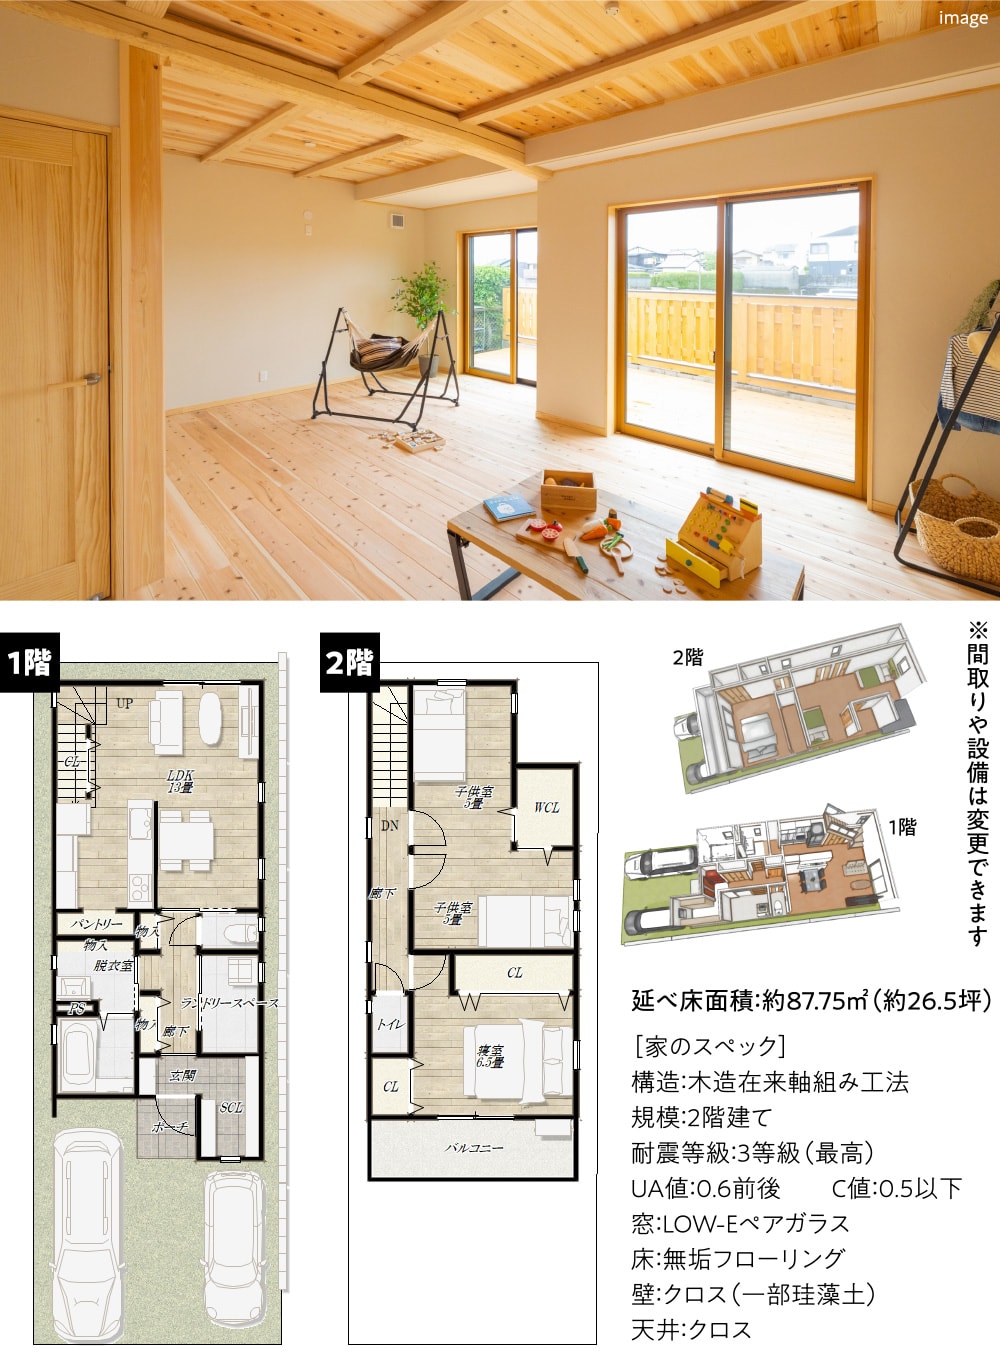 リビングのイメージ図、1階・2階の平面図、パースイメージ、家の詳細なスペック